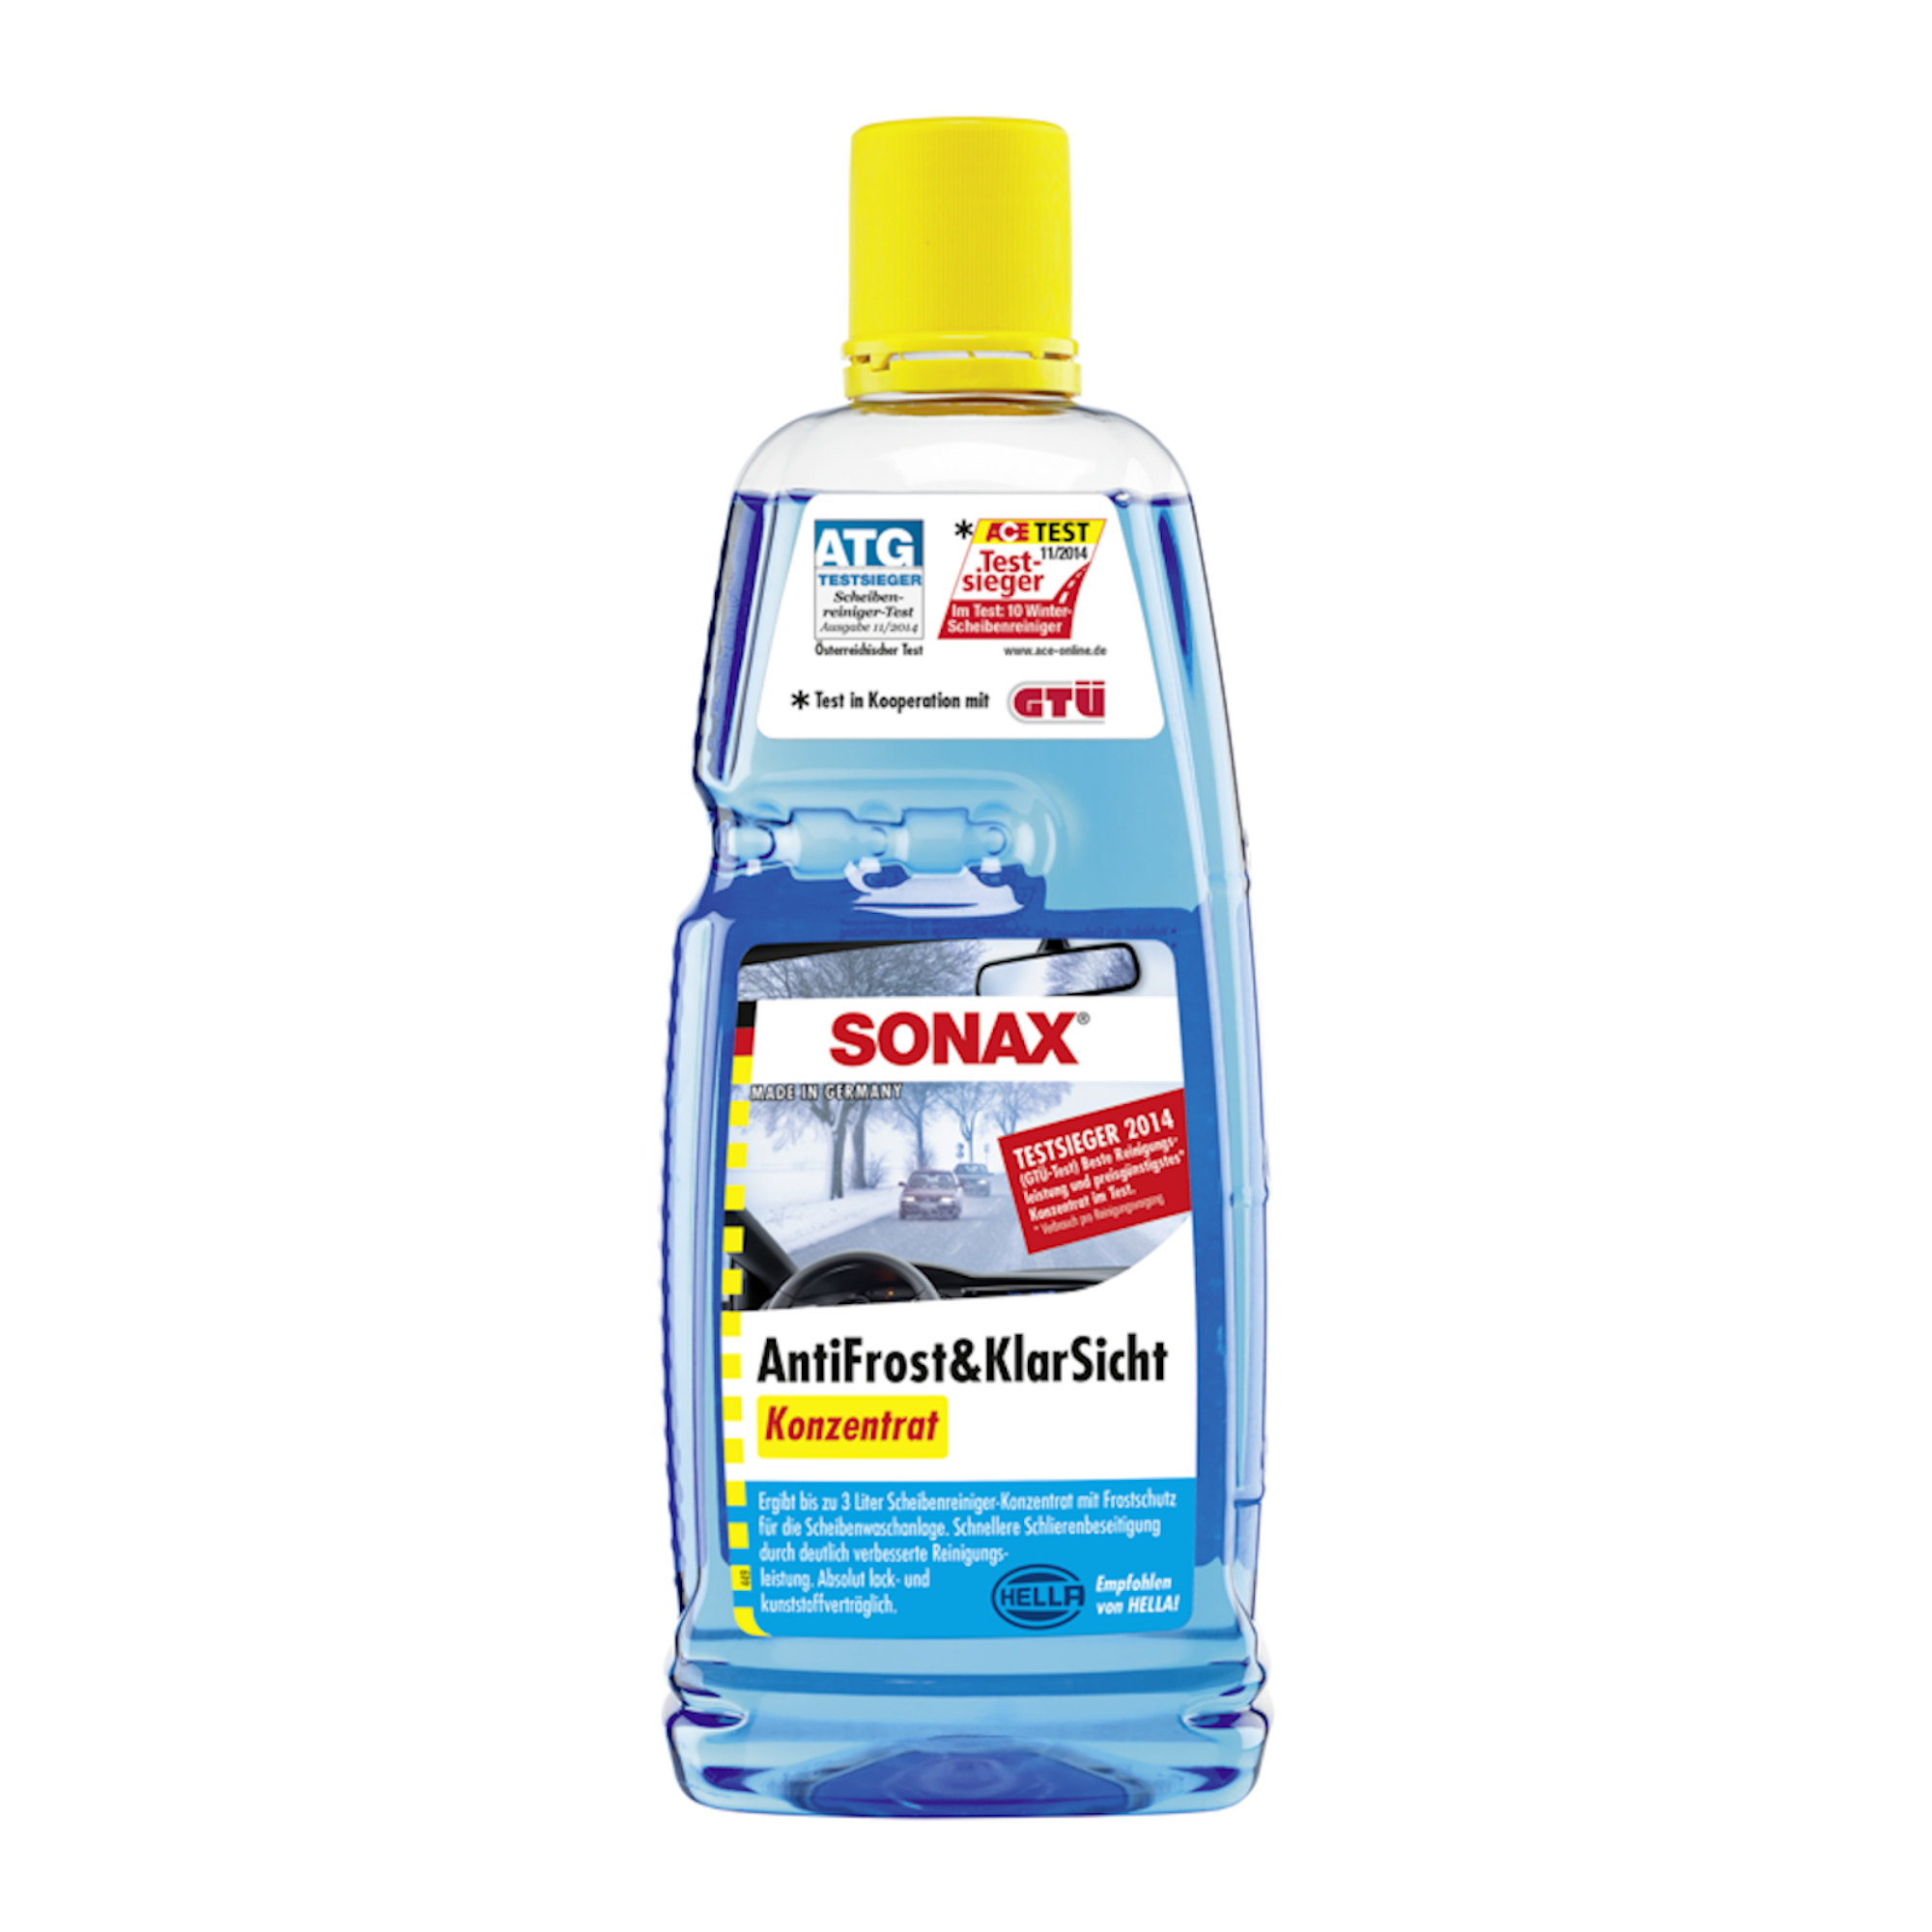 Sonax AntiFrost+KlarSicht Konzentrat 1 Liter - Fahrzeugshine